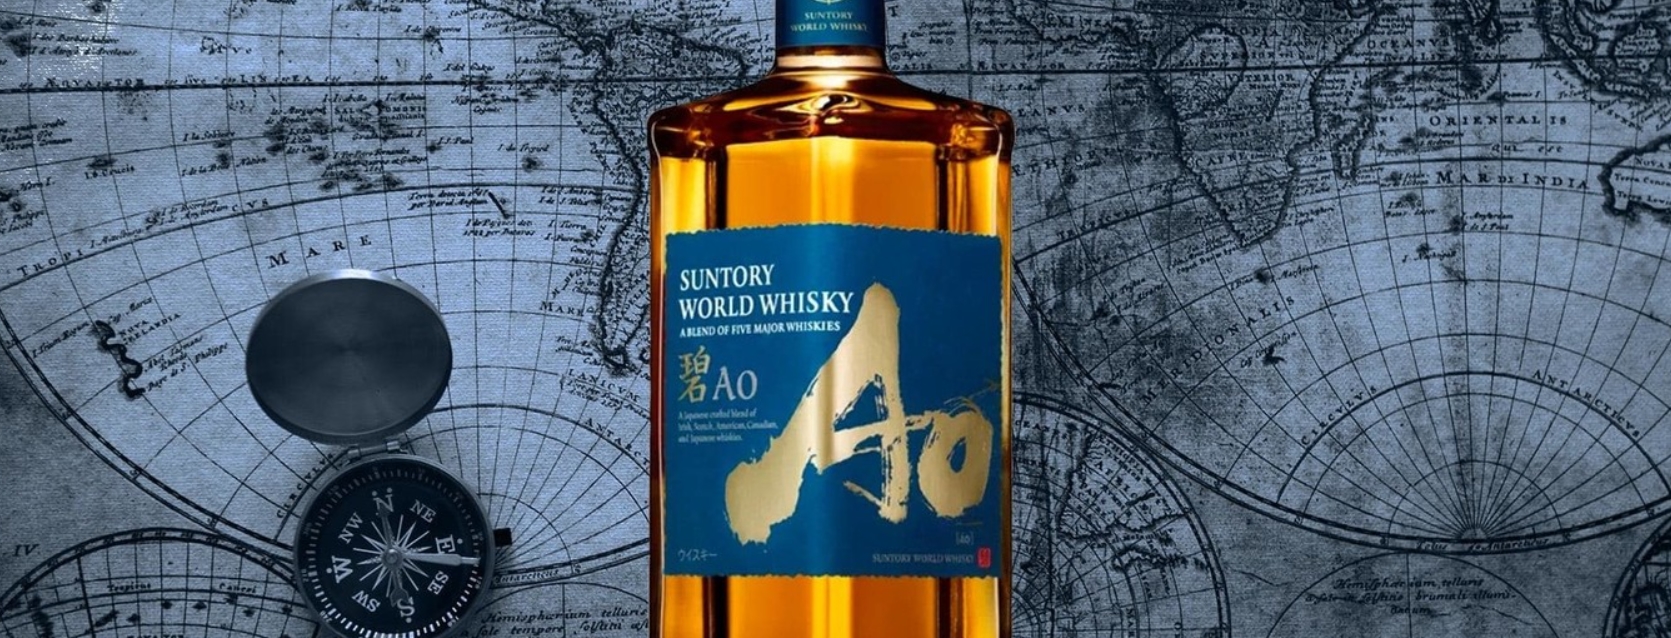 ¿Whisky japonés o escocés? 1